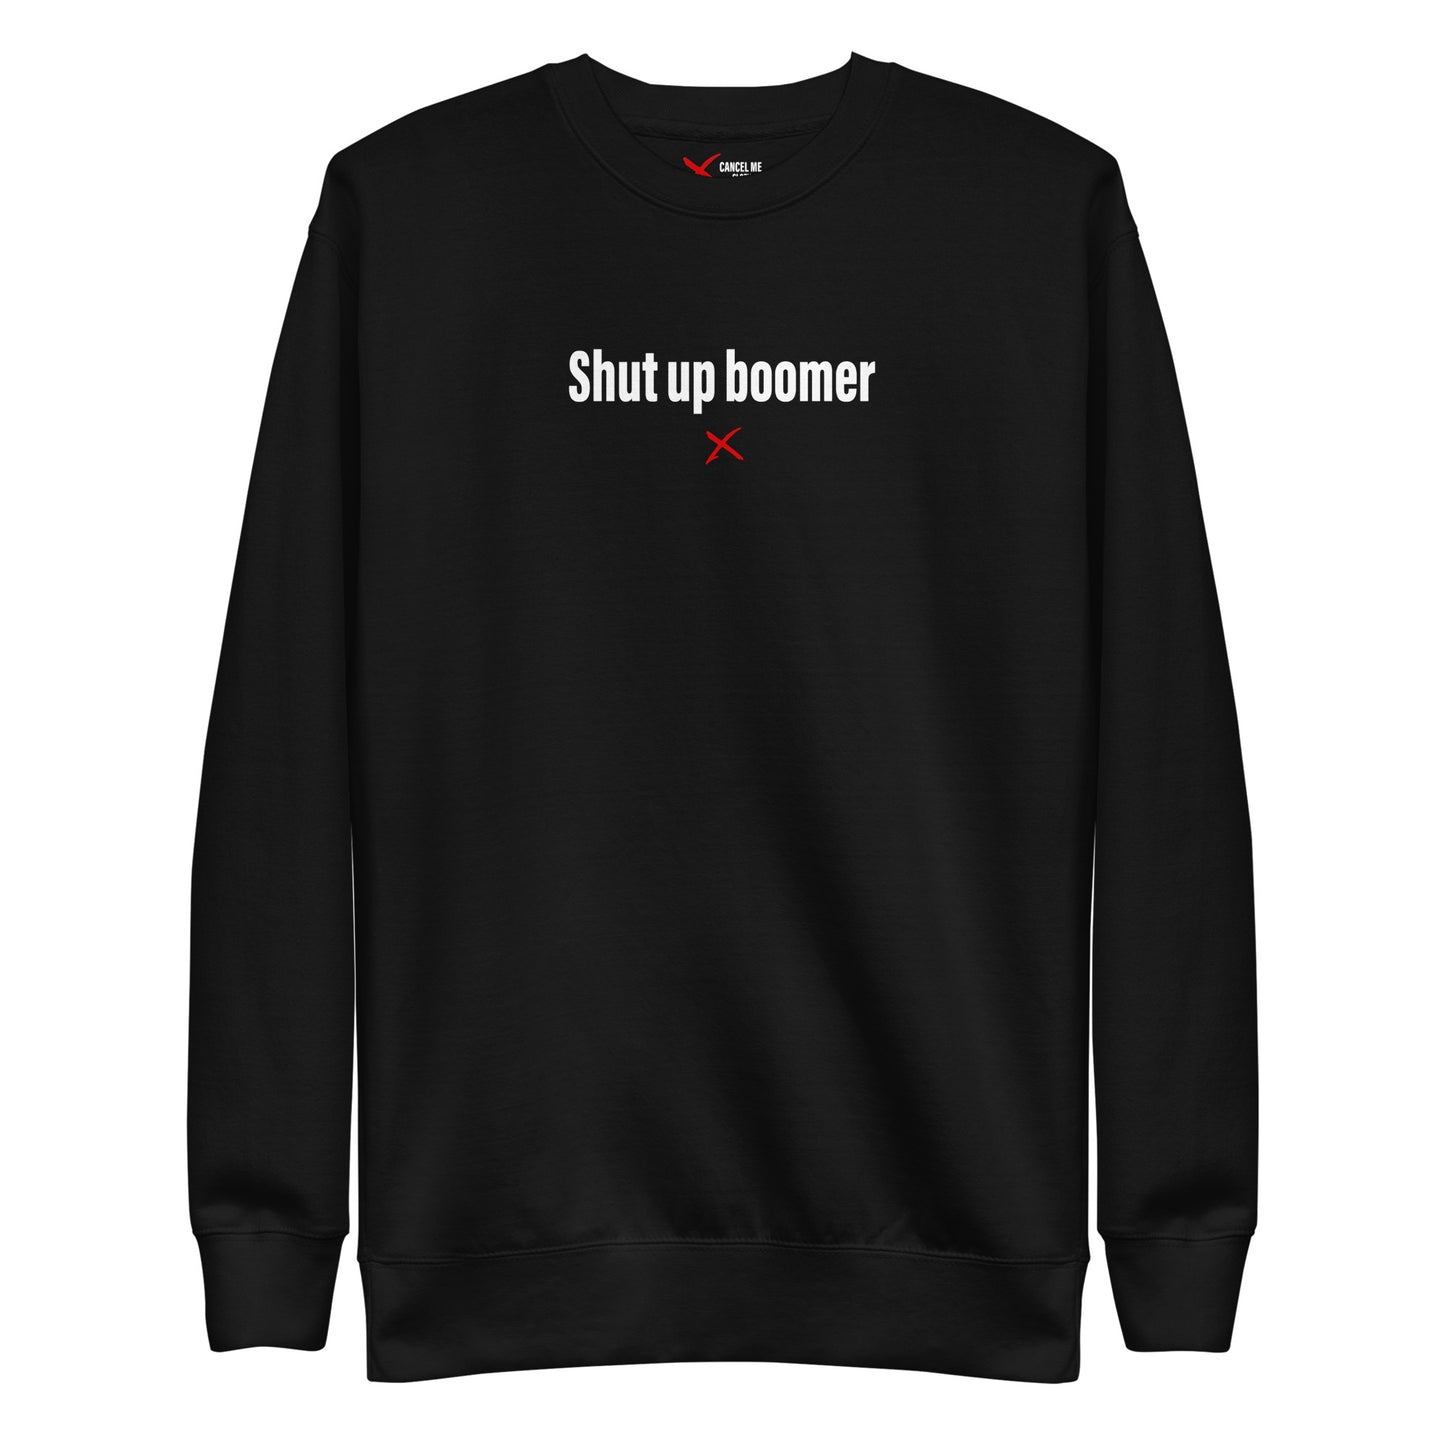 Shut up boomer - Sweatshirt